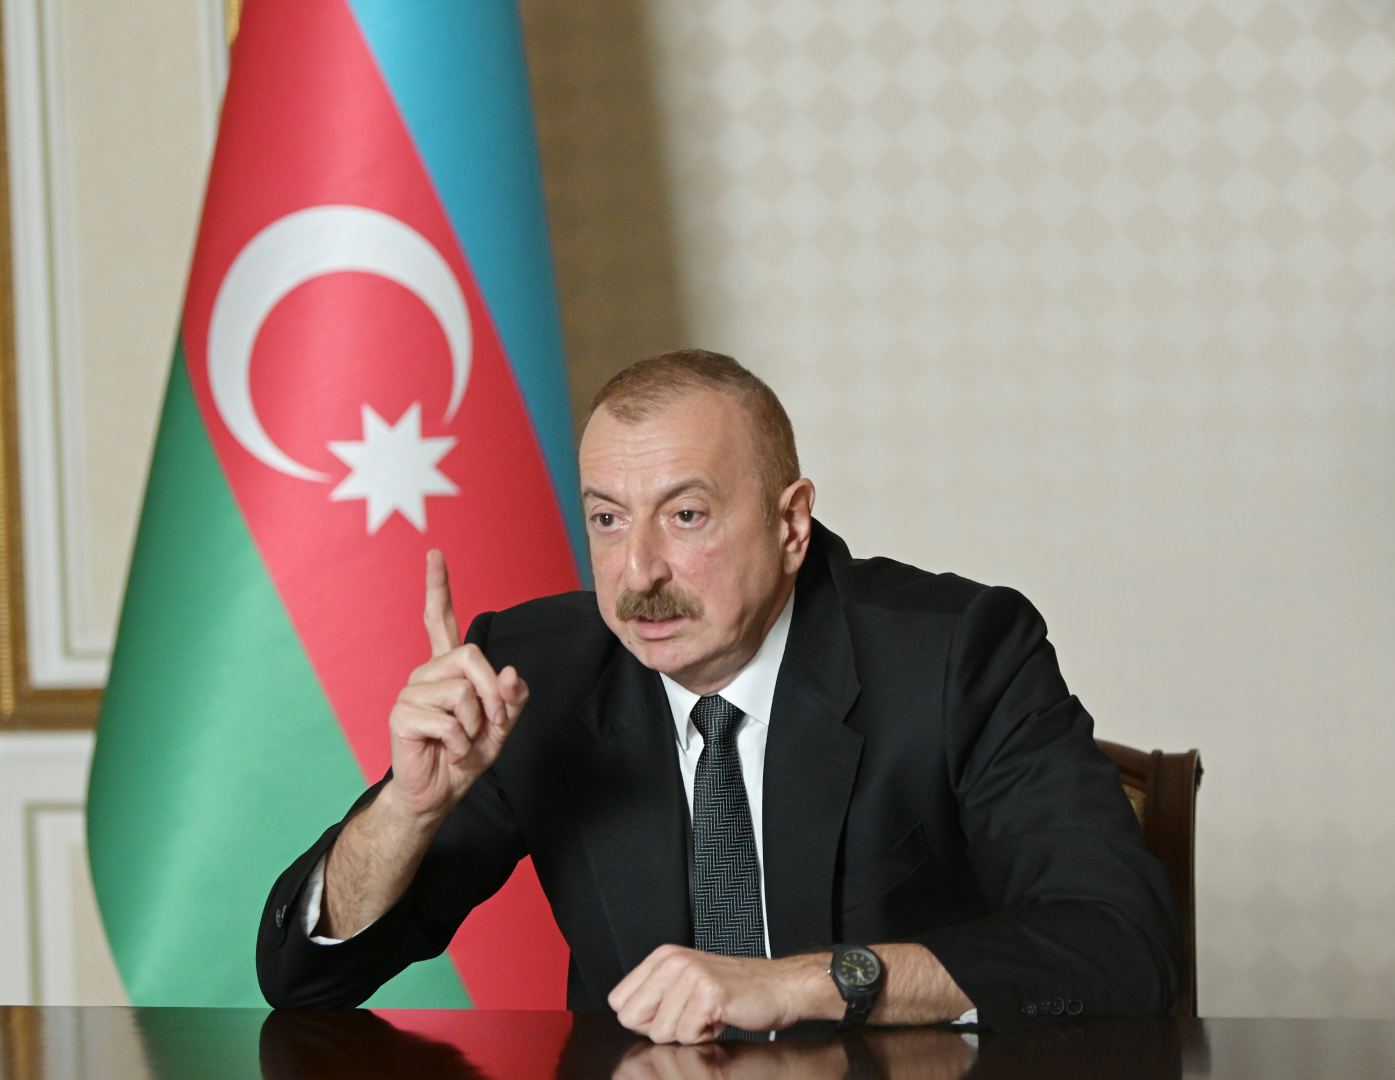 Под председательством Президента Ильхама Алиева состоялось заседание Кабинета министров, посвященное итогам социально-экономического развития в первой половине 2020 года и предстоящим задачам (ФОТО) - Gallery Image